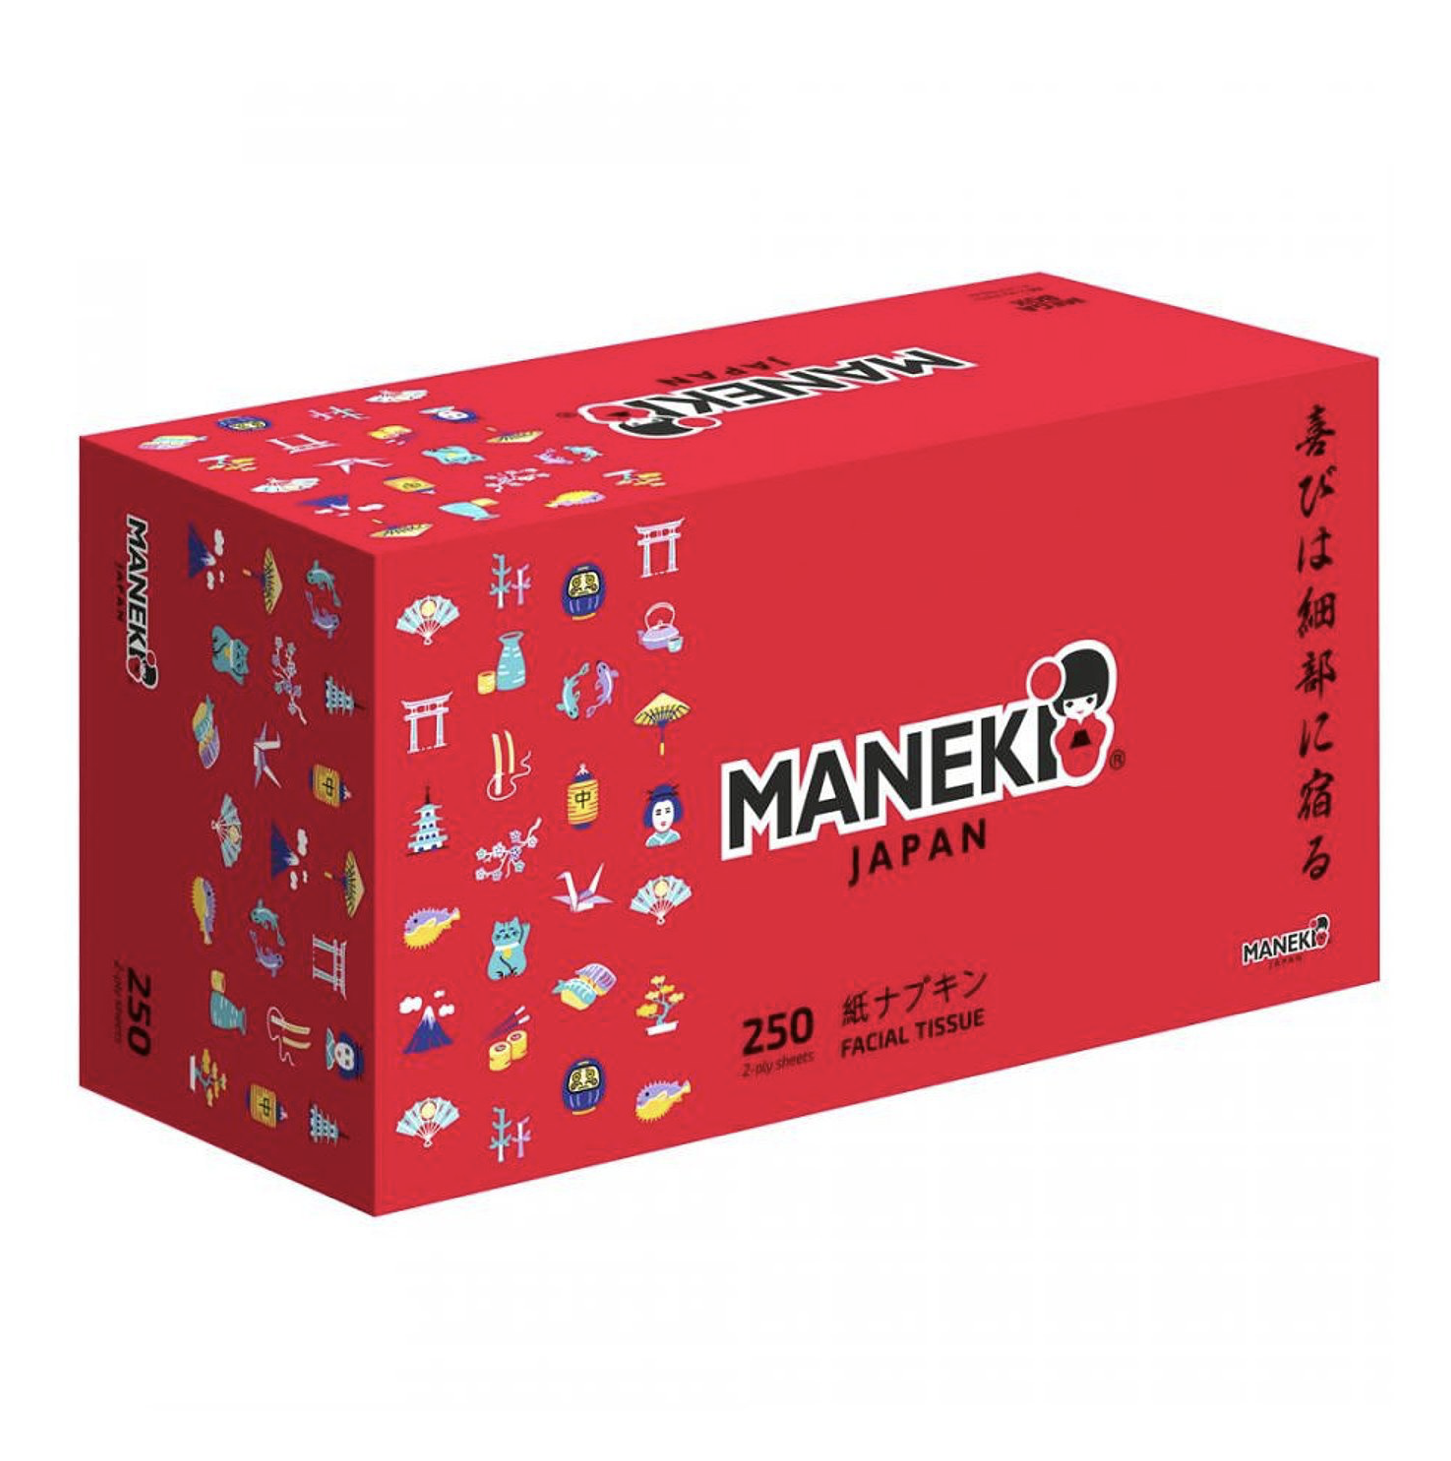   / Maneki -     Red 250 